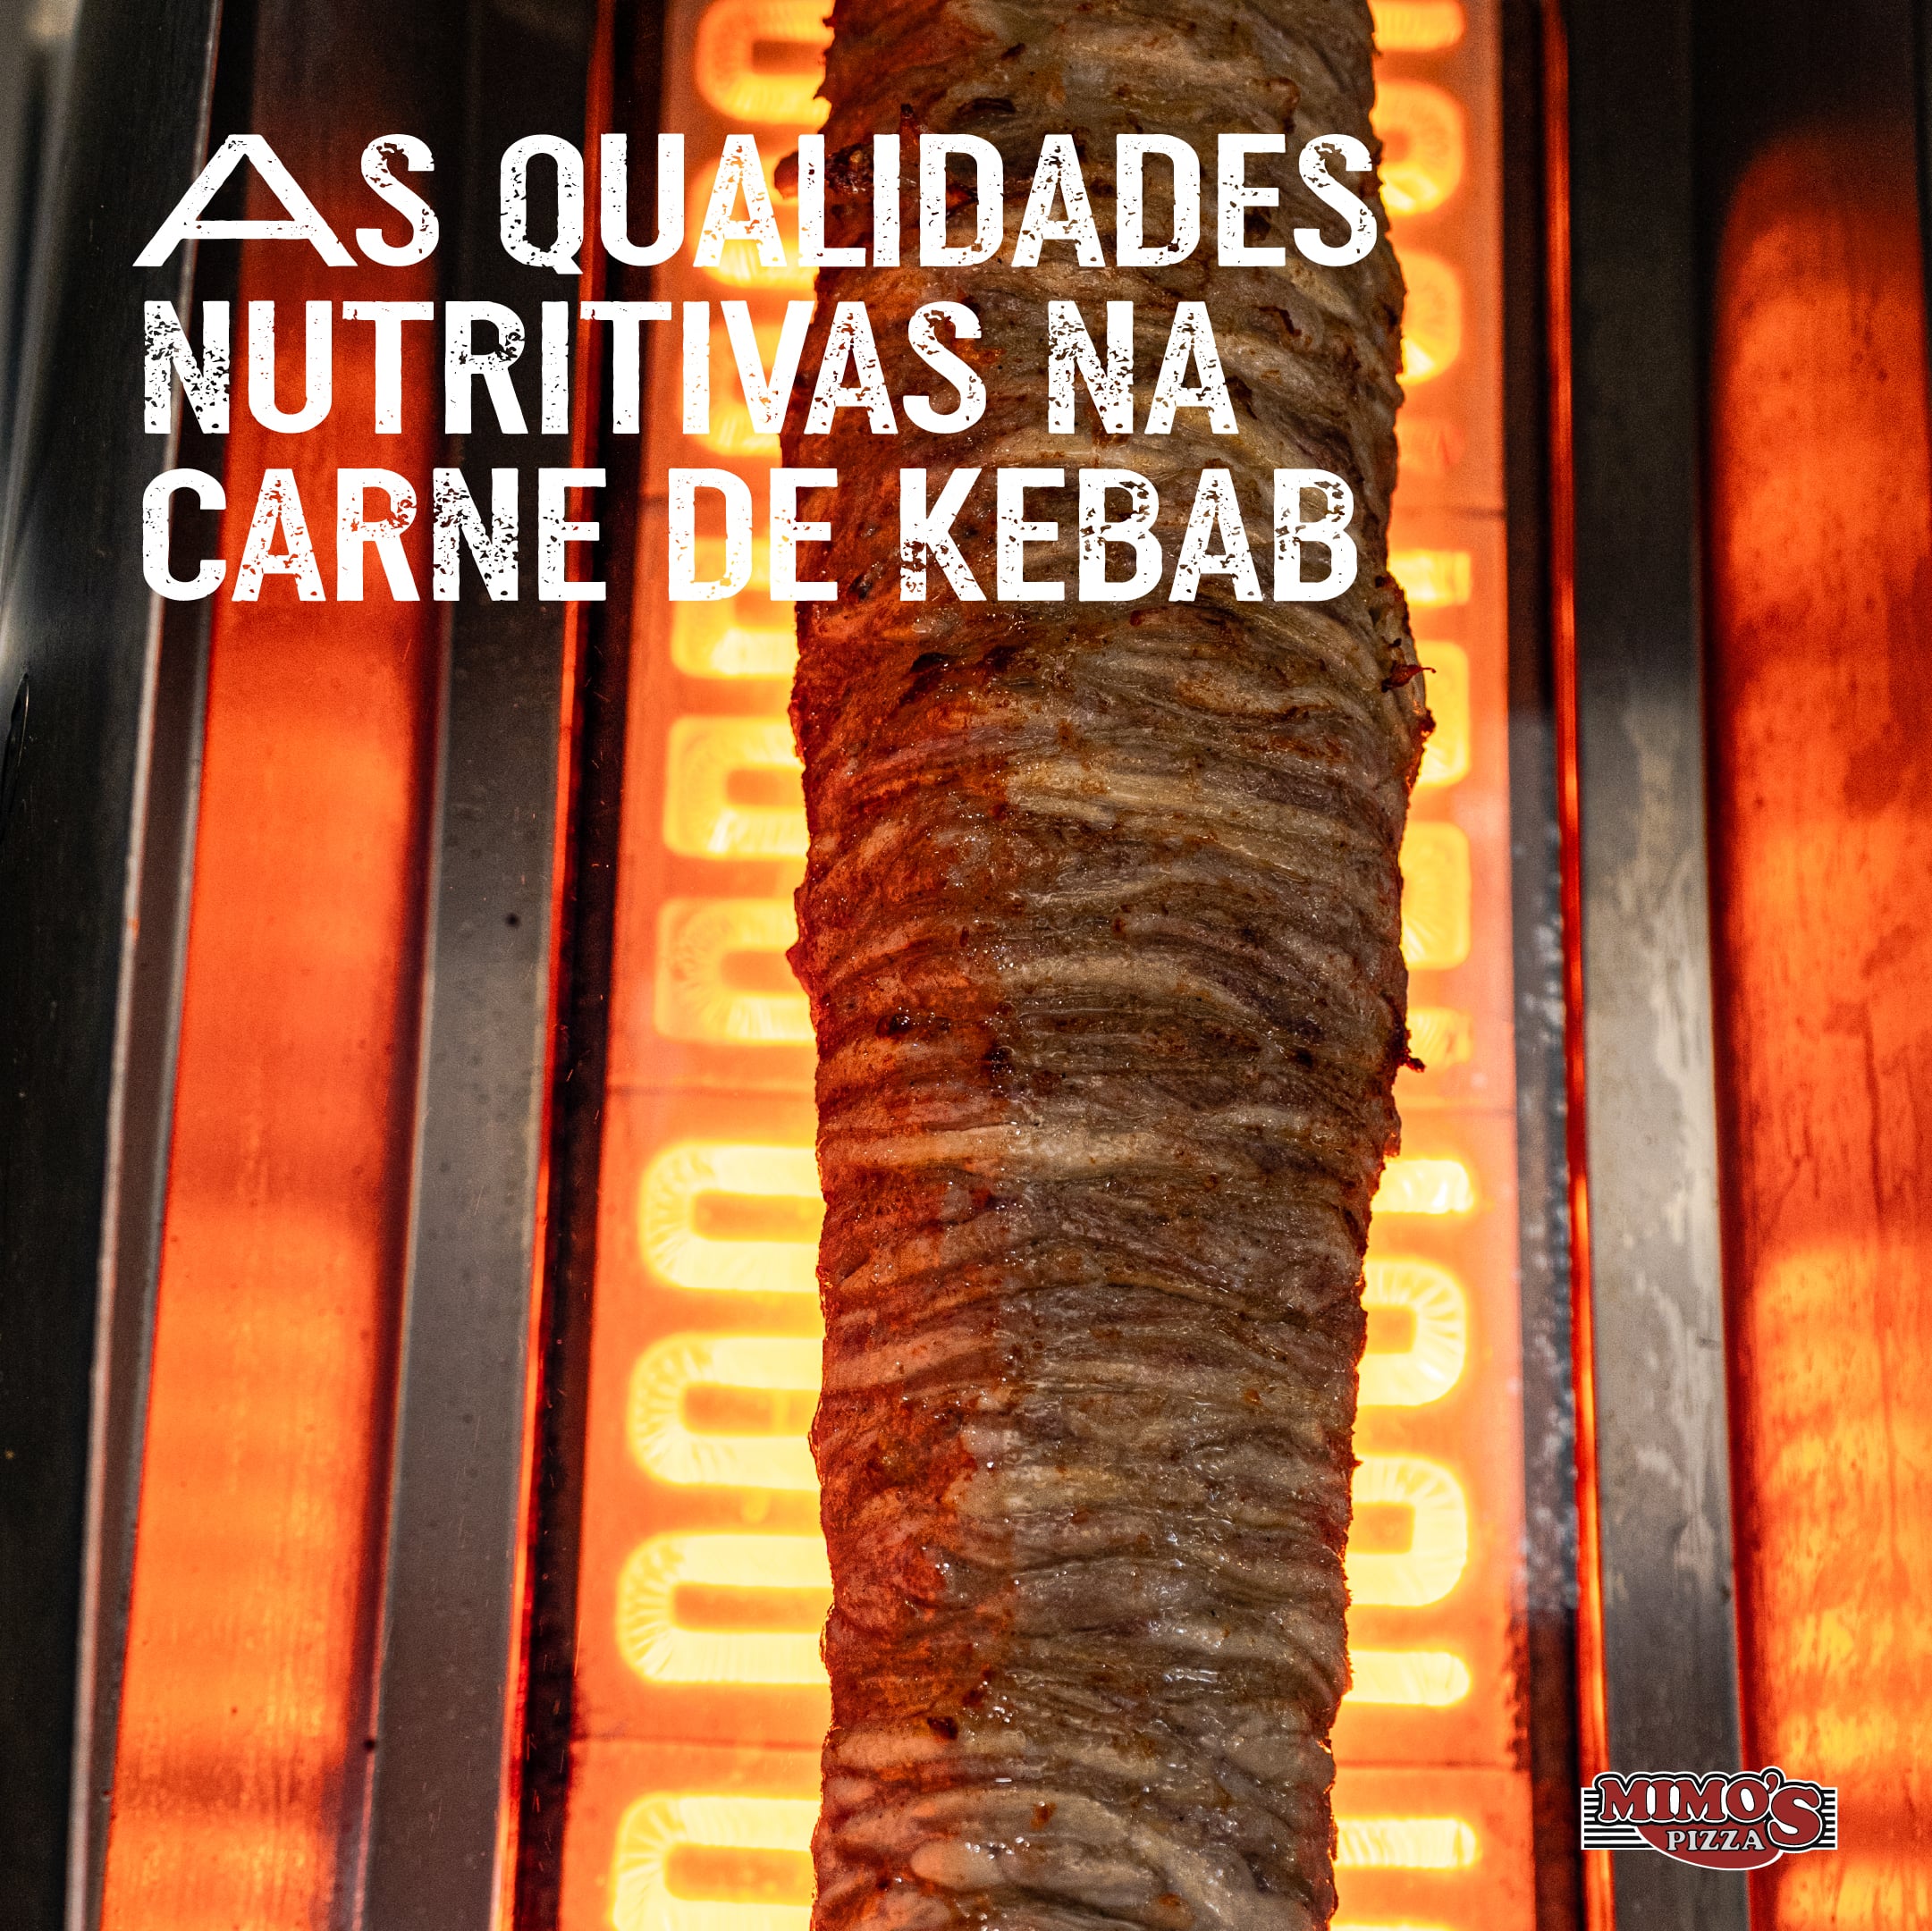 As qualidades nutritivas da carne de kebab